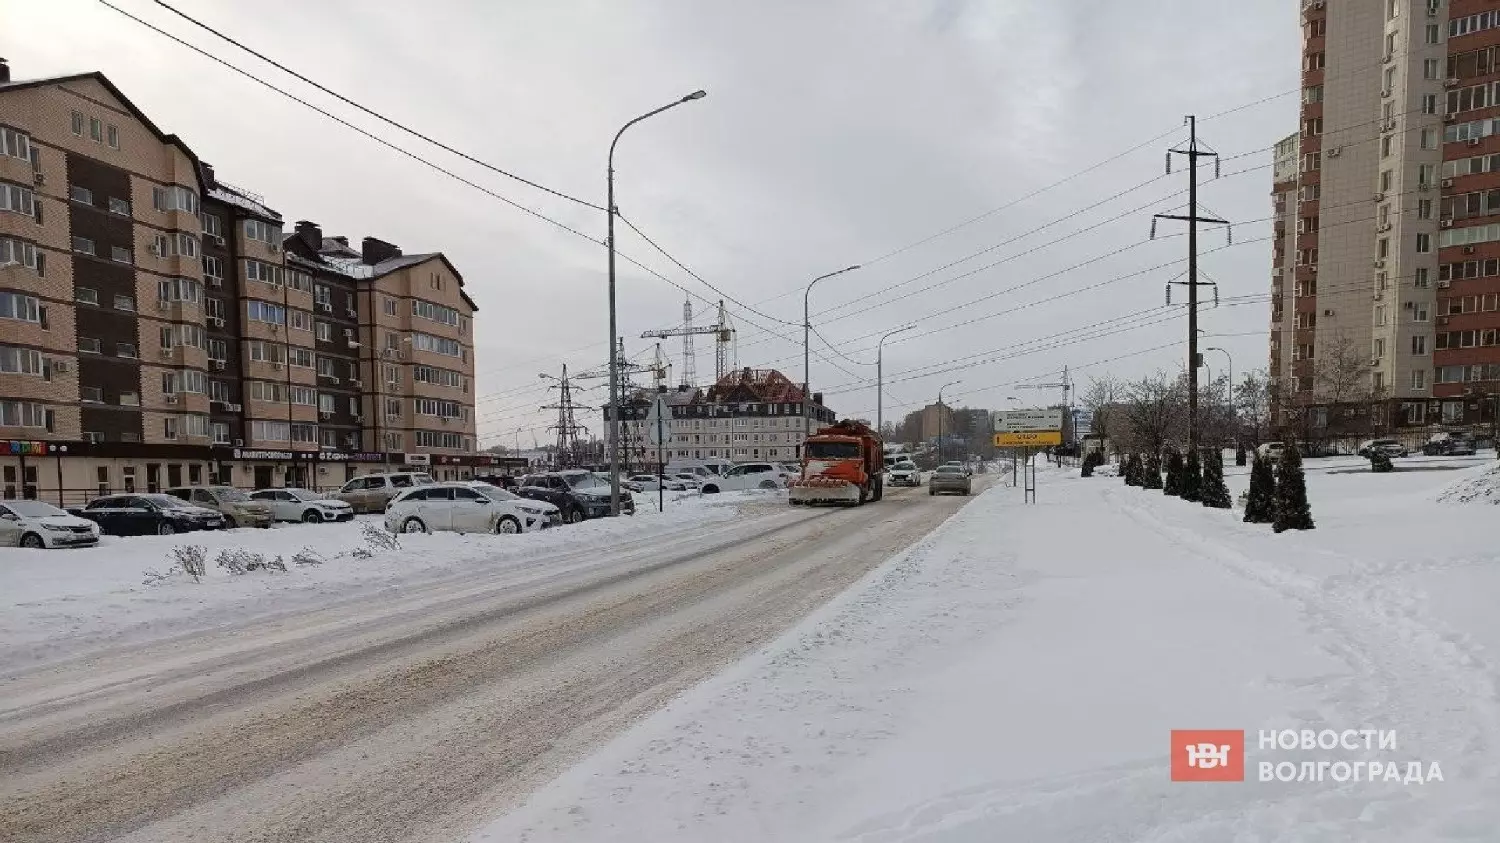 Дороги в Дзержинском районе чистили, но снег ещё лежит